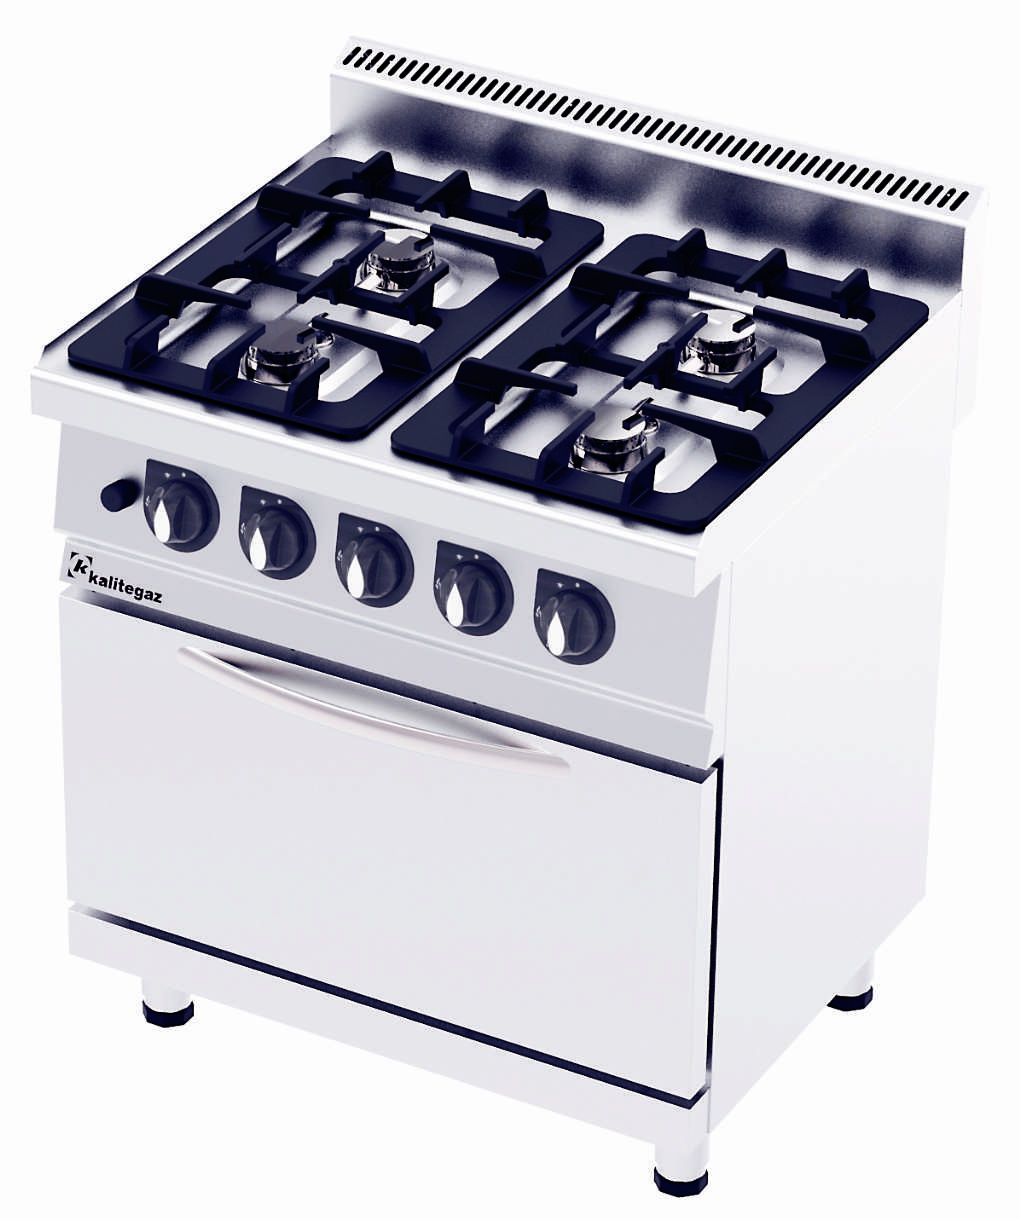 CO8070G 700 Serıe Gas Cooker wıth Oven